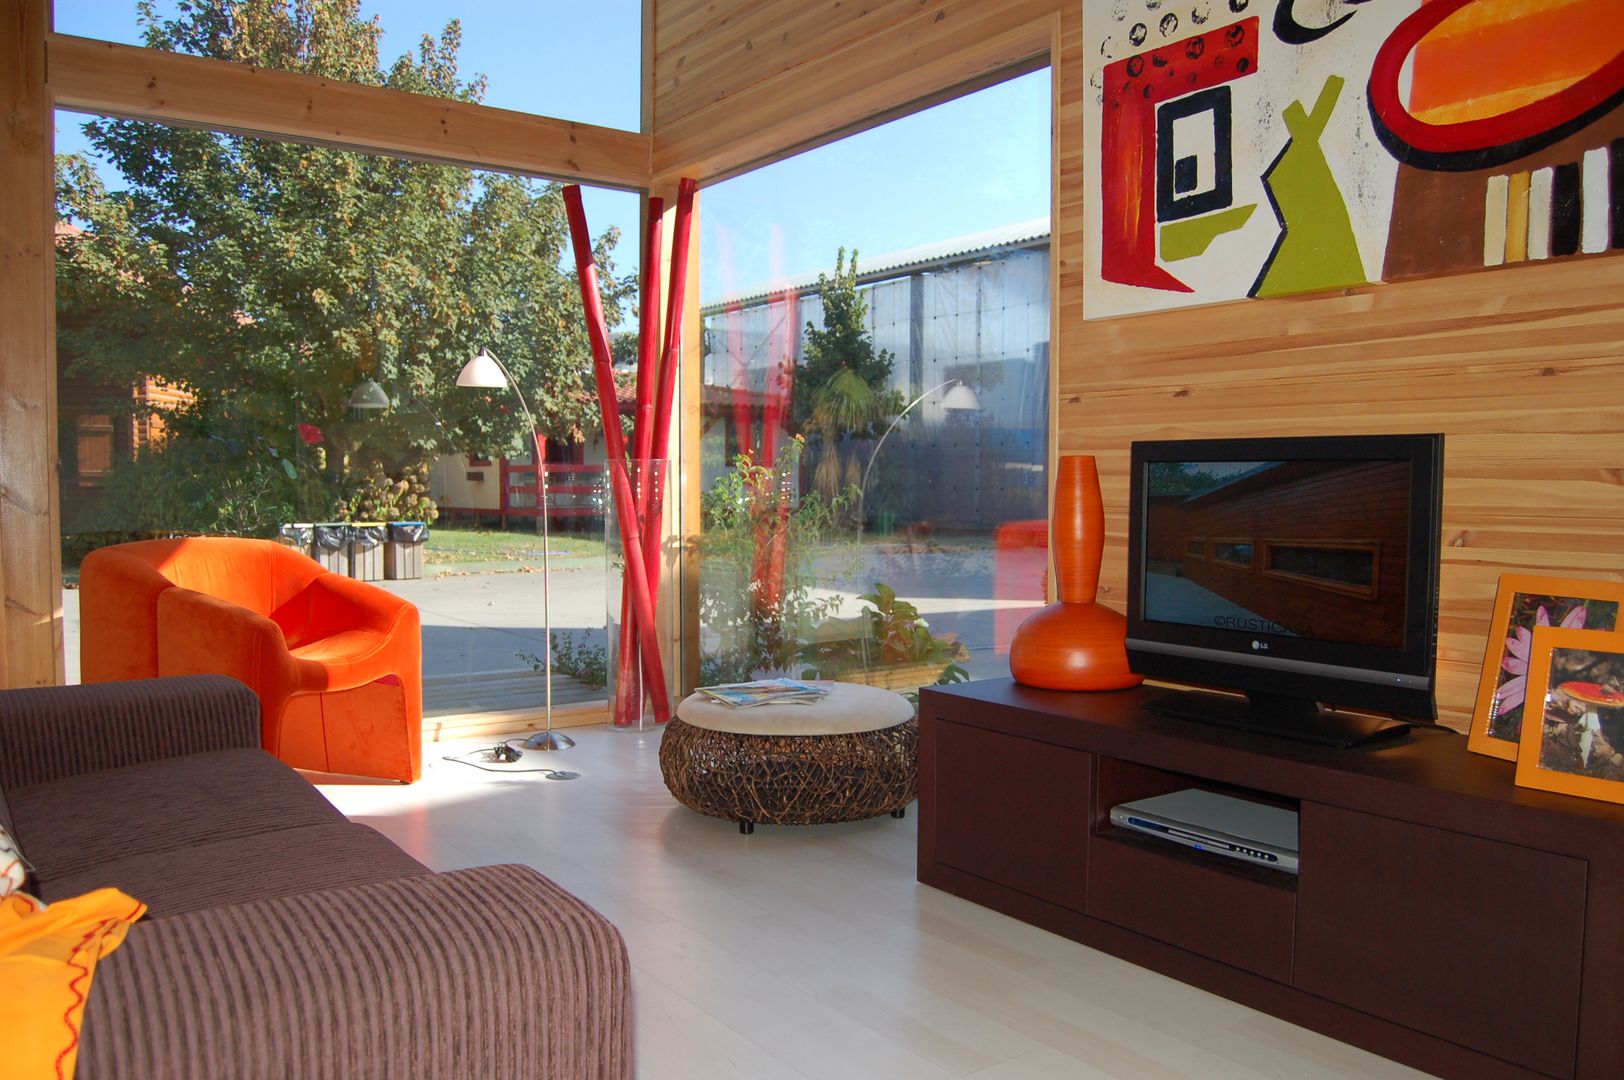 RUSTICASA | Casa modelo | Vila Nova de Cerveira, RUSTICASA RUSTICASA Living room Wood Wood effect